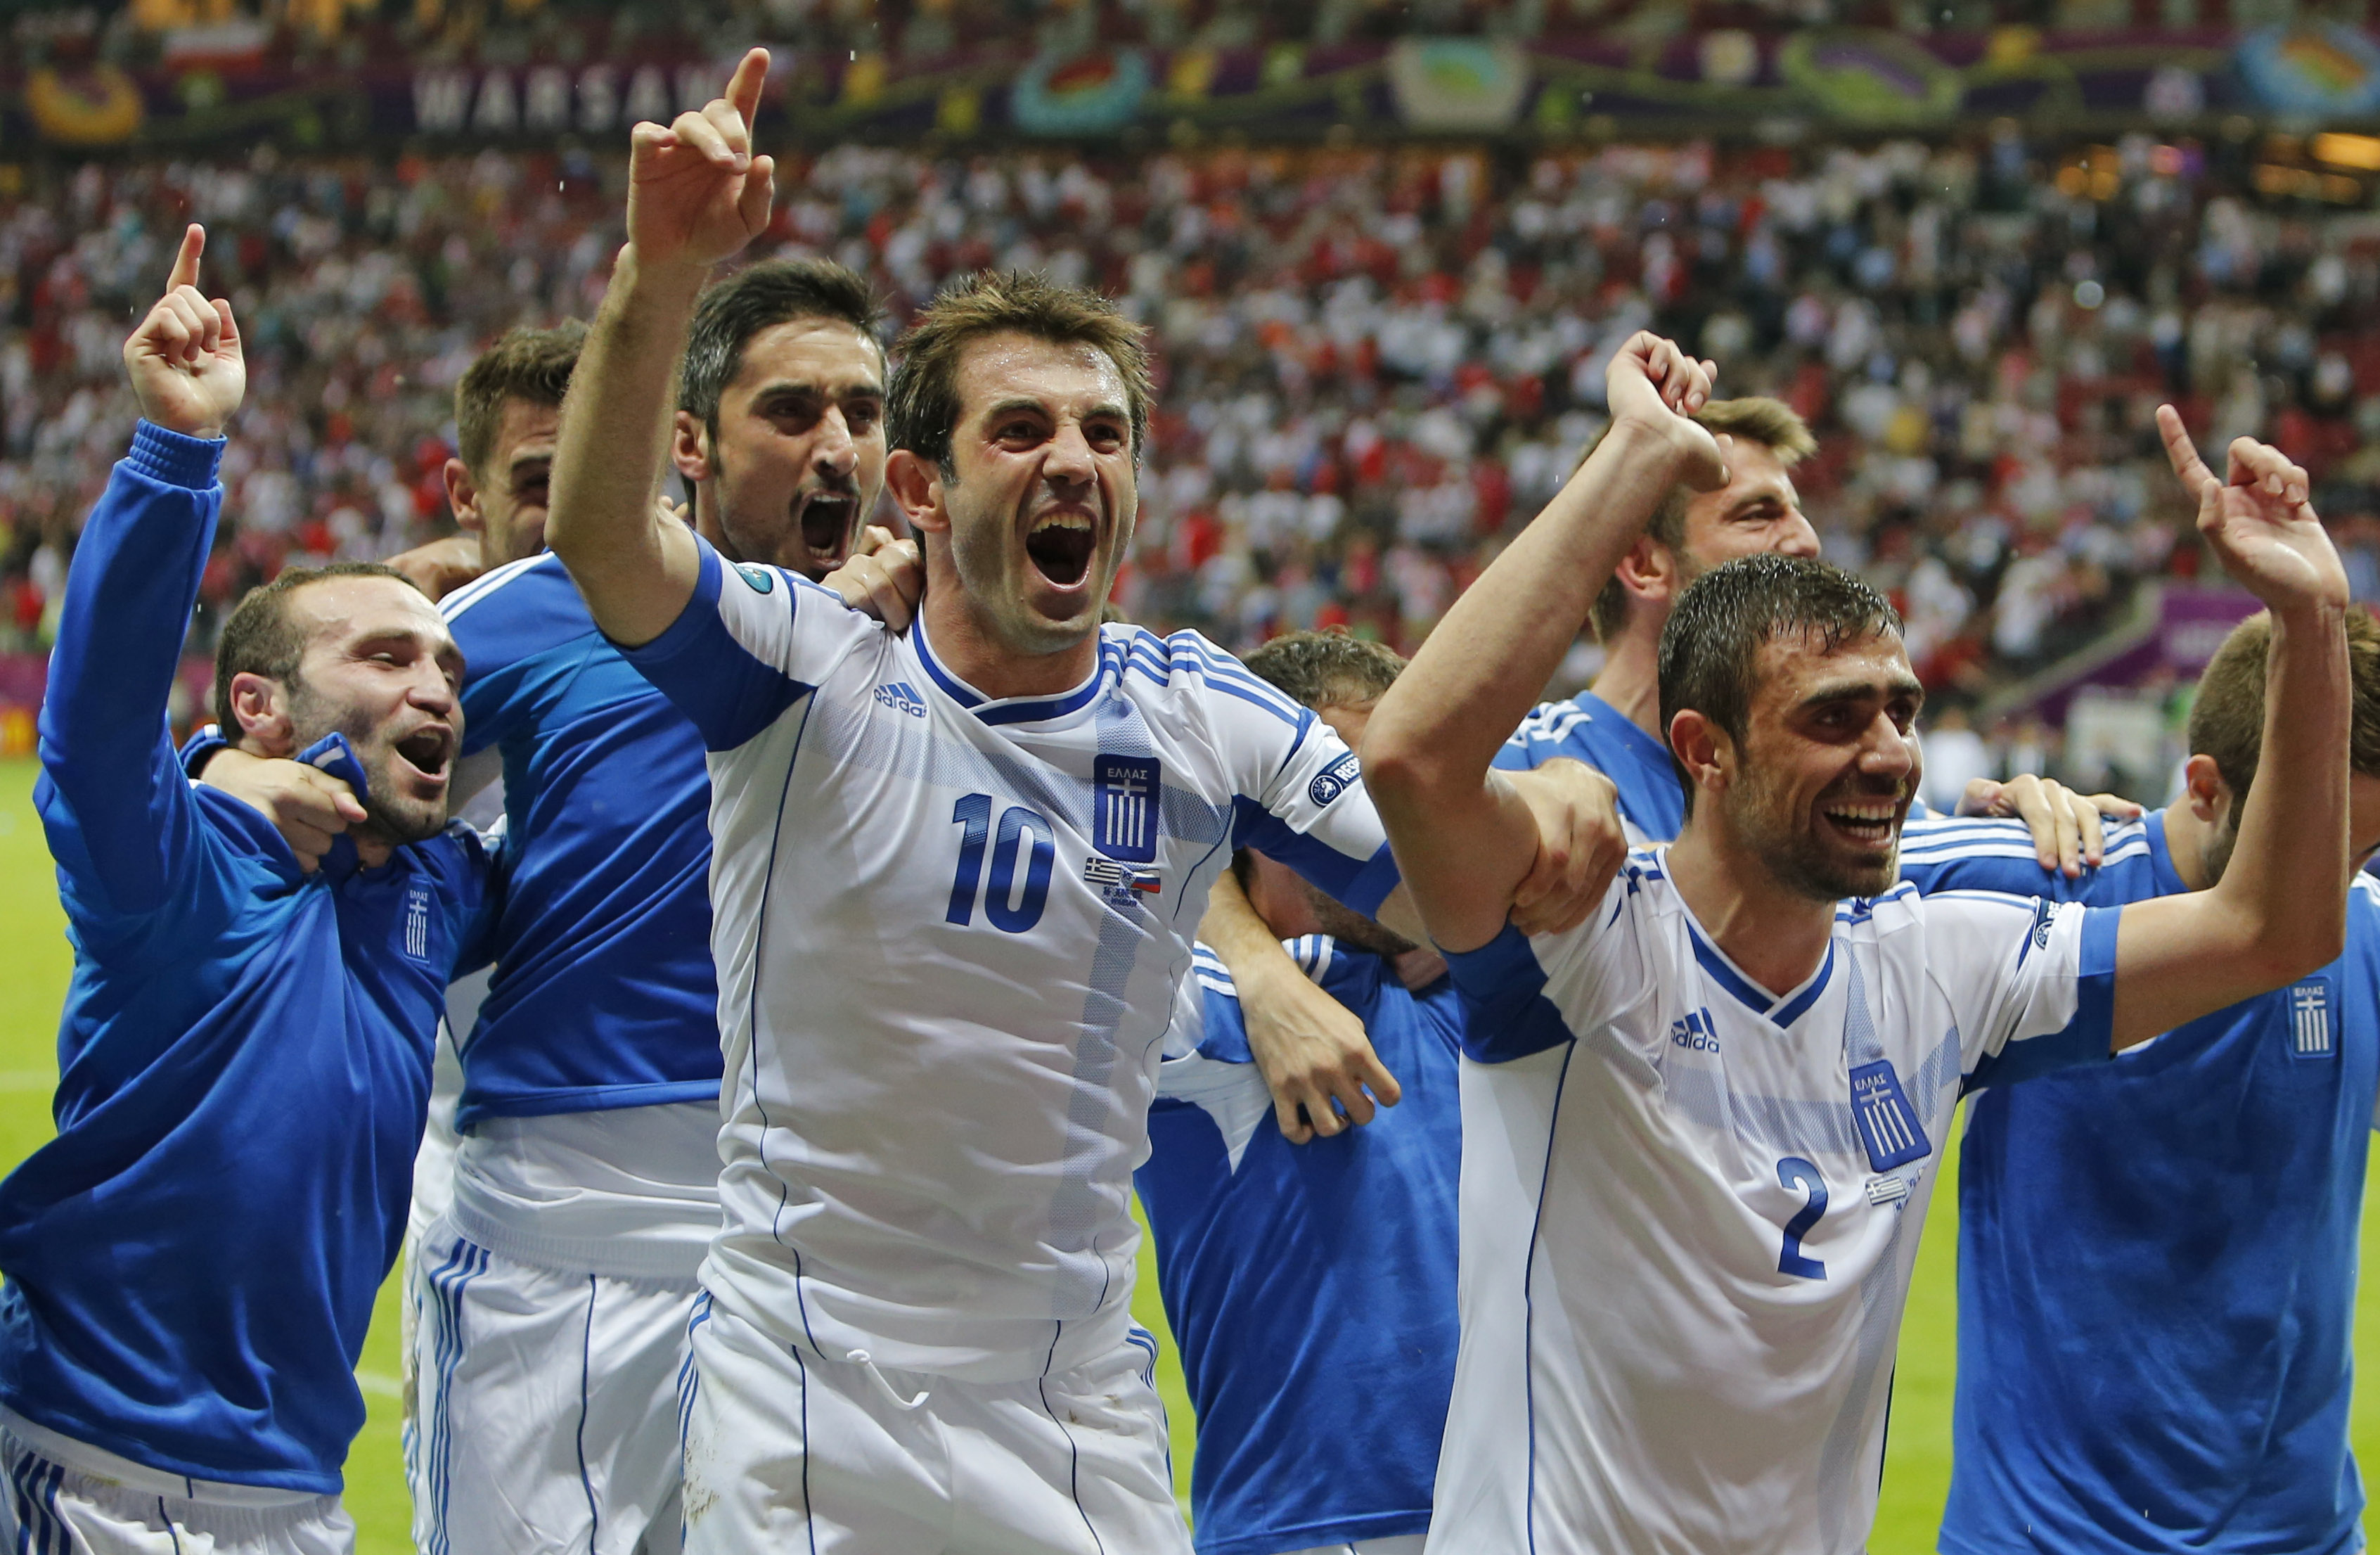 De grekiska spelarna var överlyckliga efter skrällen mot Ryssland. Kan de skrälla igen?